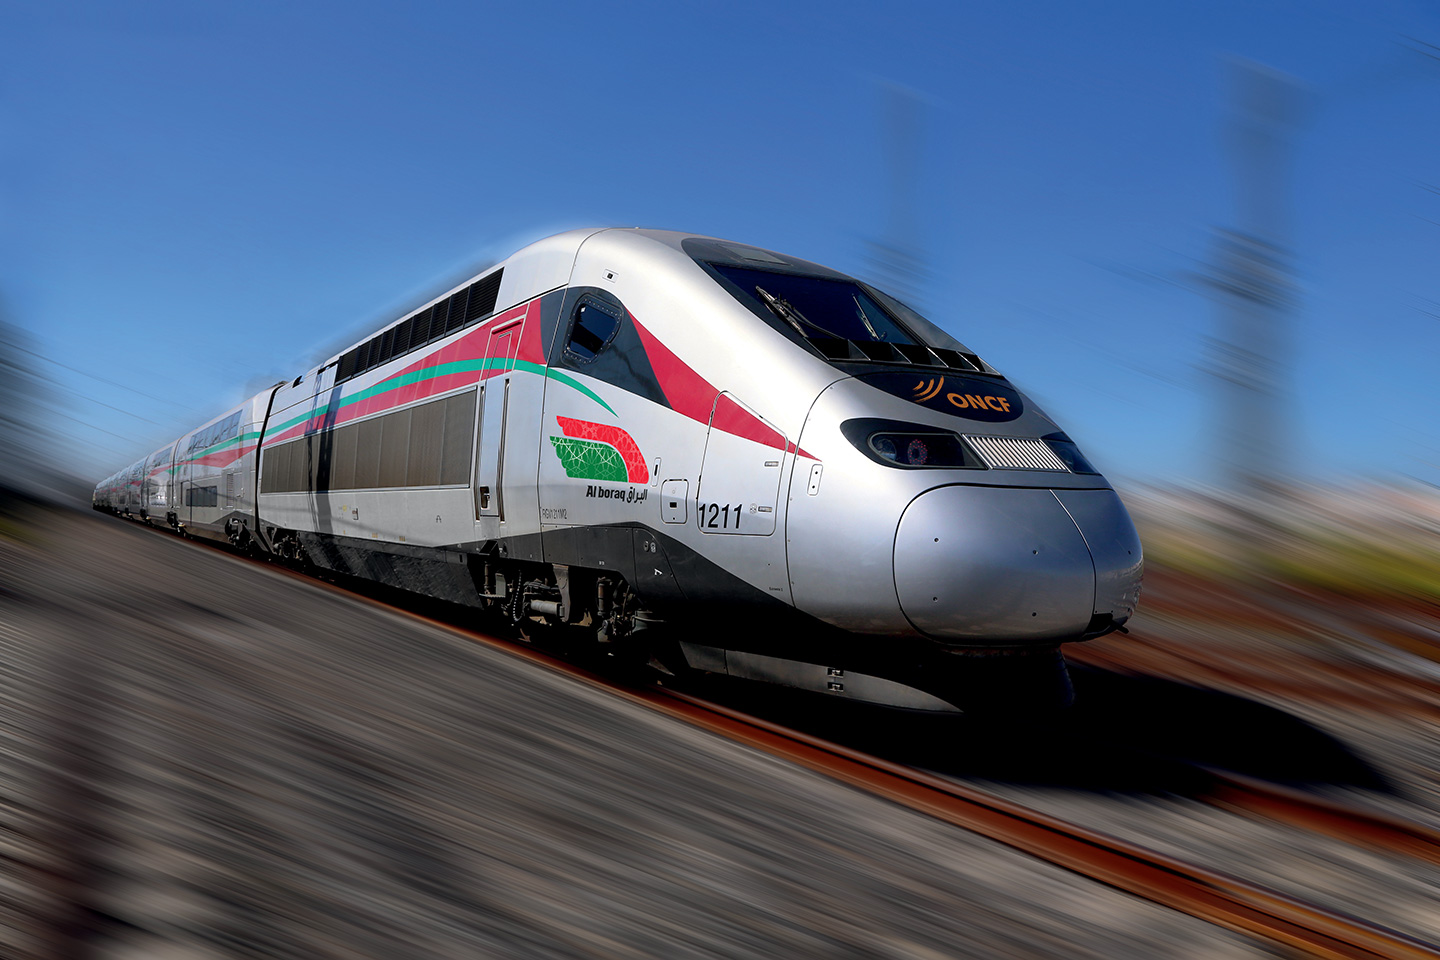 Comité-des-Transports-Ferroviaires-Maghrébins-CTFM